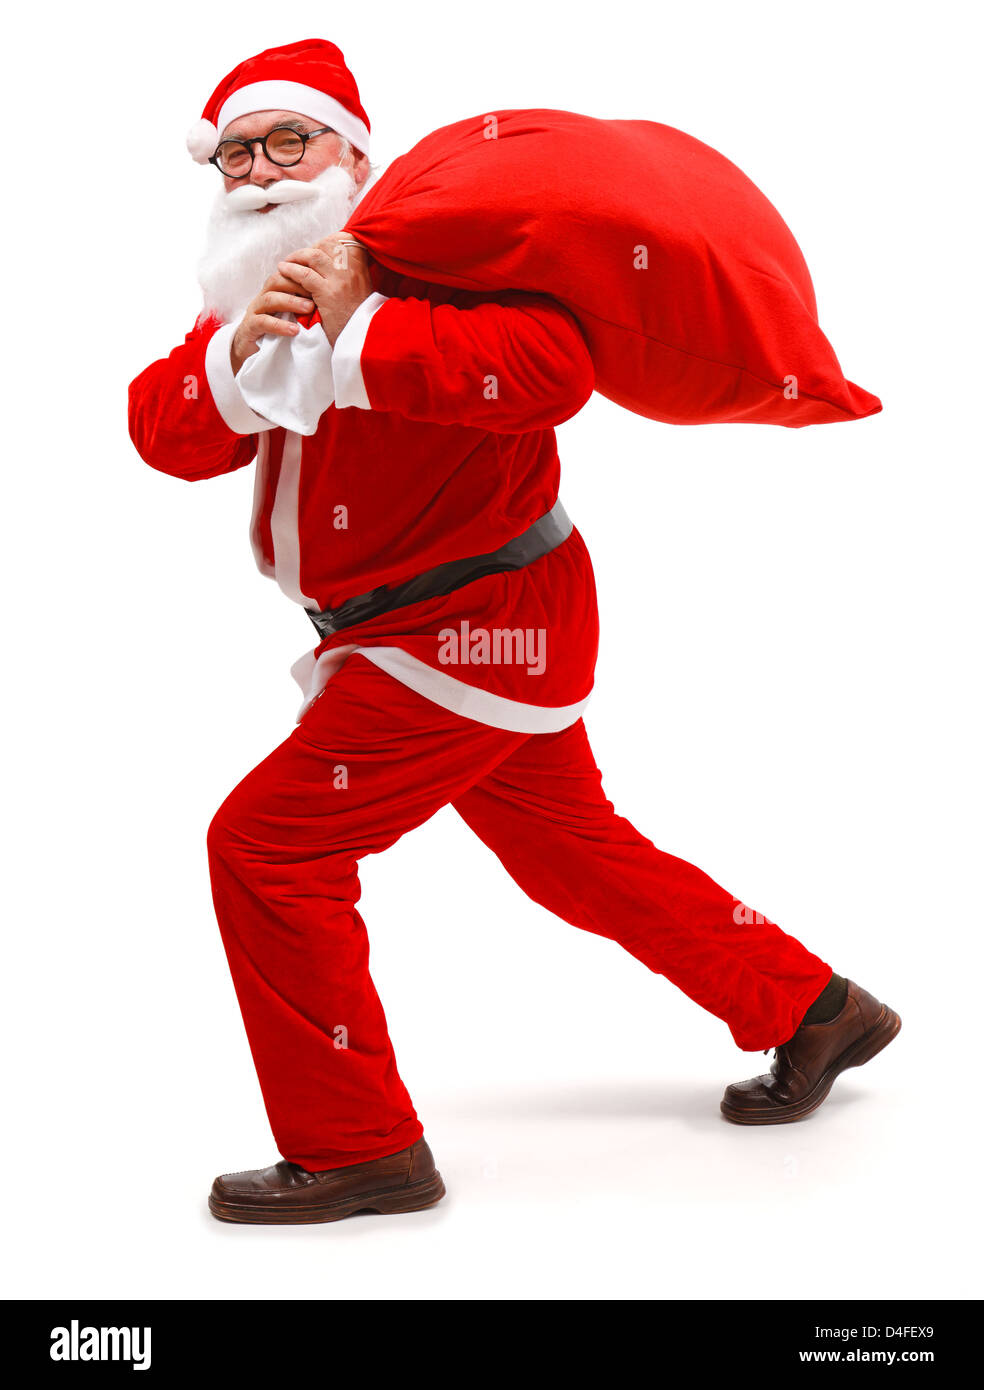 Senior man wearing Santa Claus uniform, walking with full bag Stock Photo